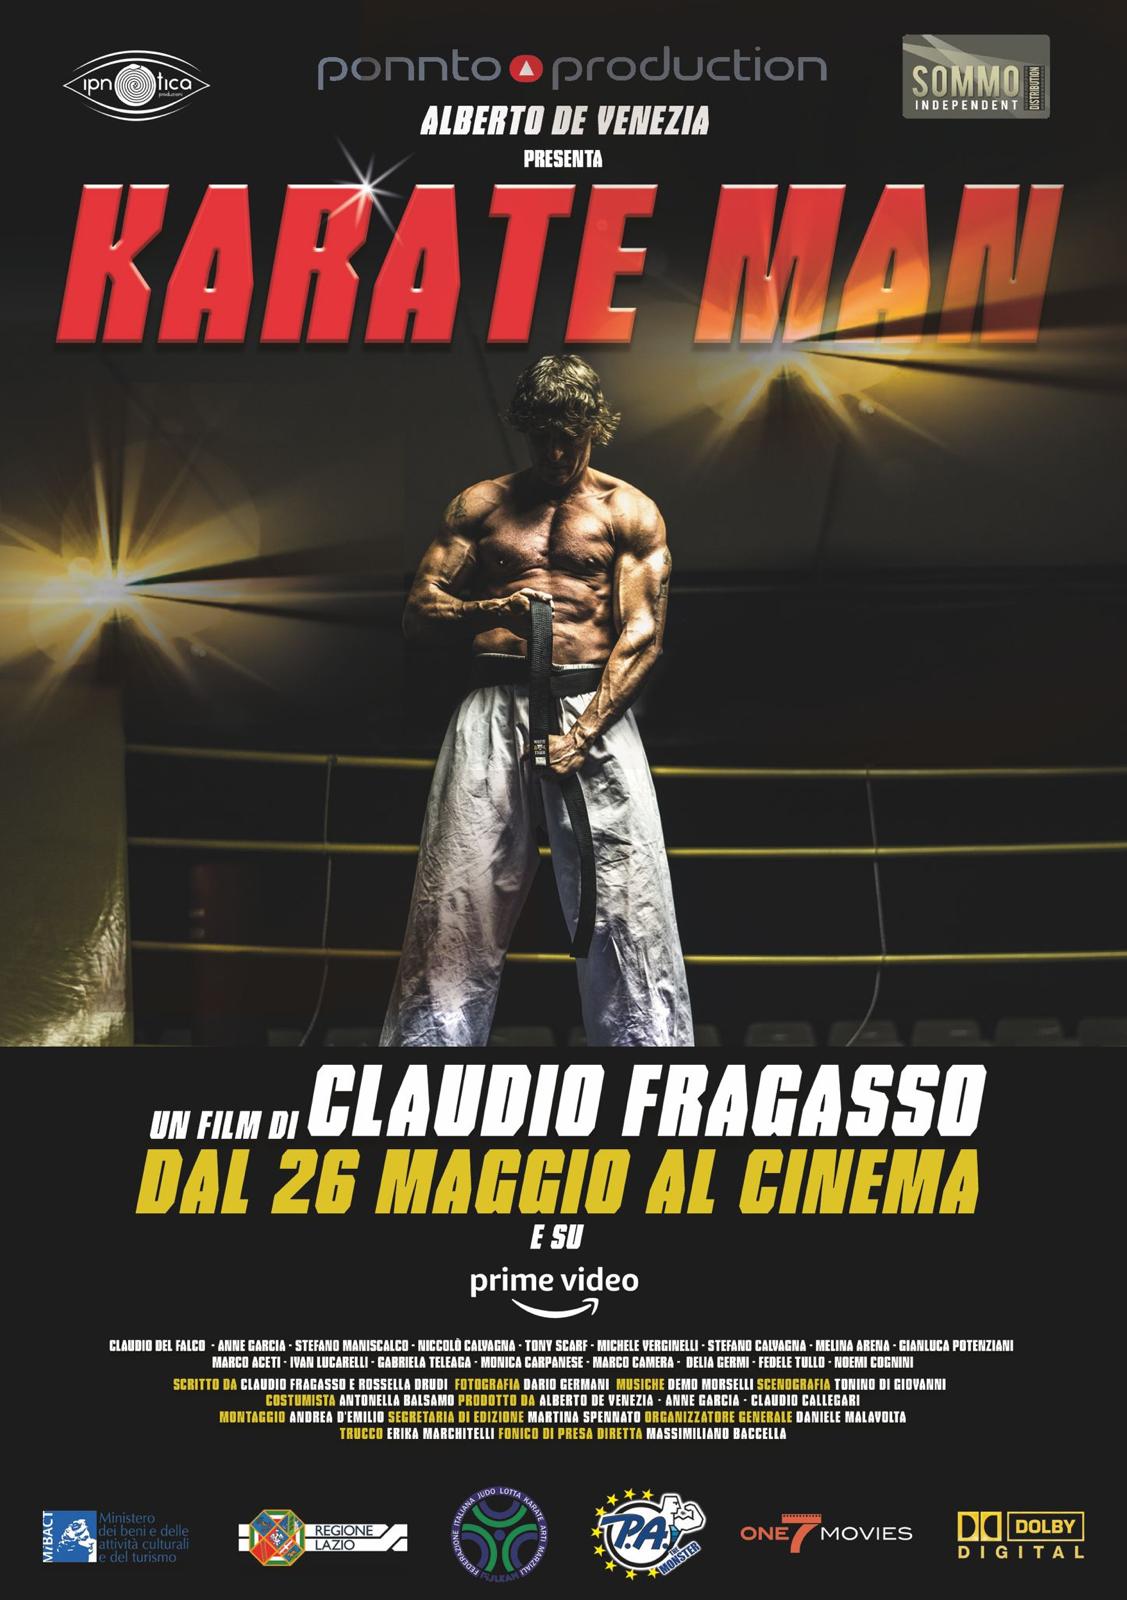 Arriva al cinema "Karate man" di Claudio Fragasso, vera storia di come lo sport aiuta a curare la malattia